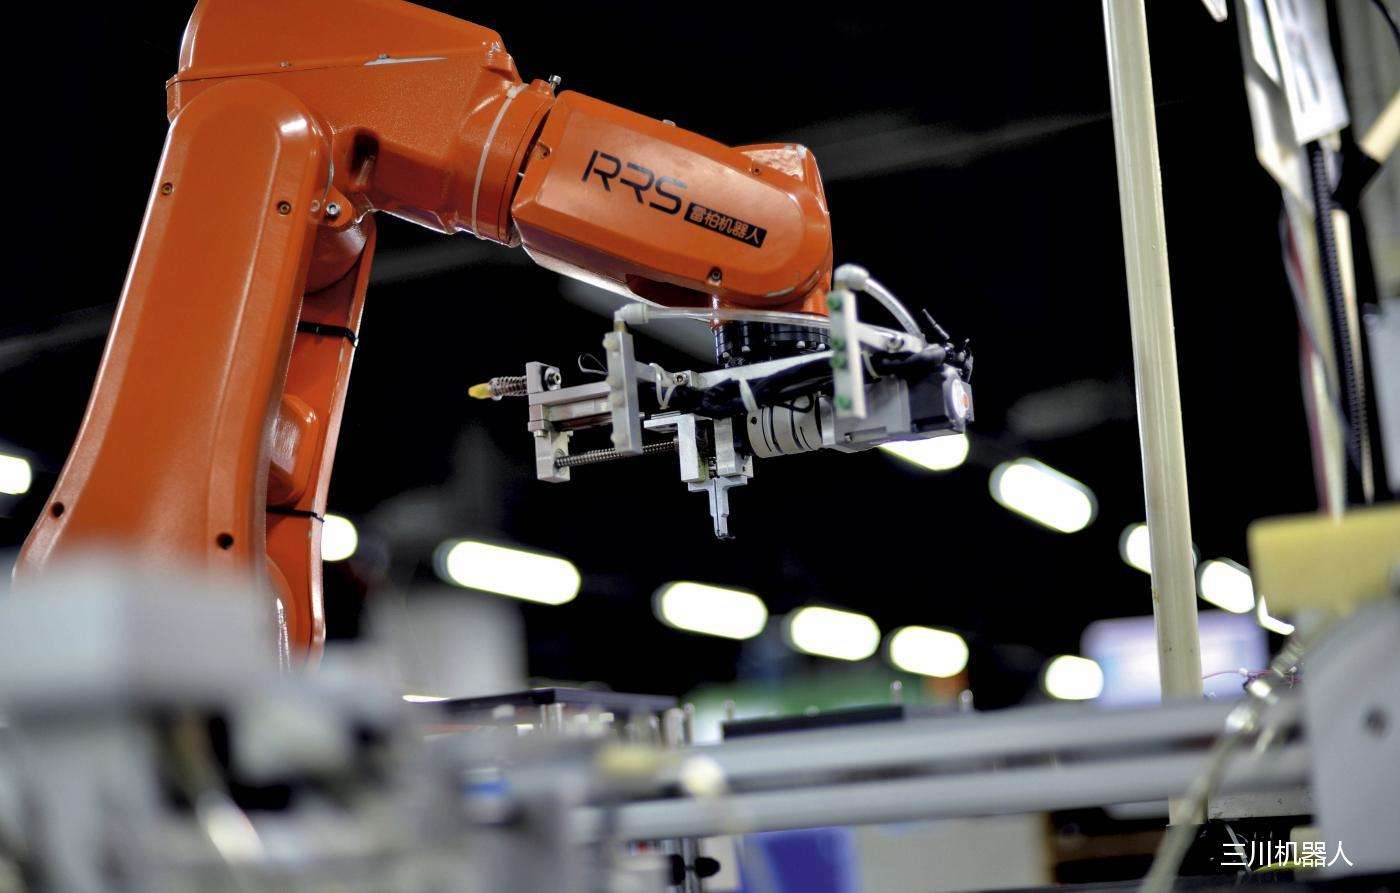 先进制造业:工业机器人将突破智能模块_搜狐科技_搜狐网